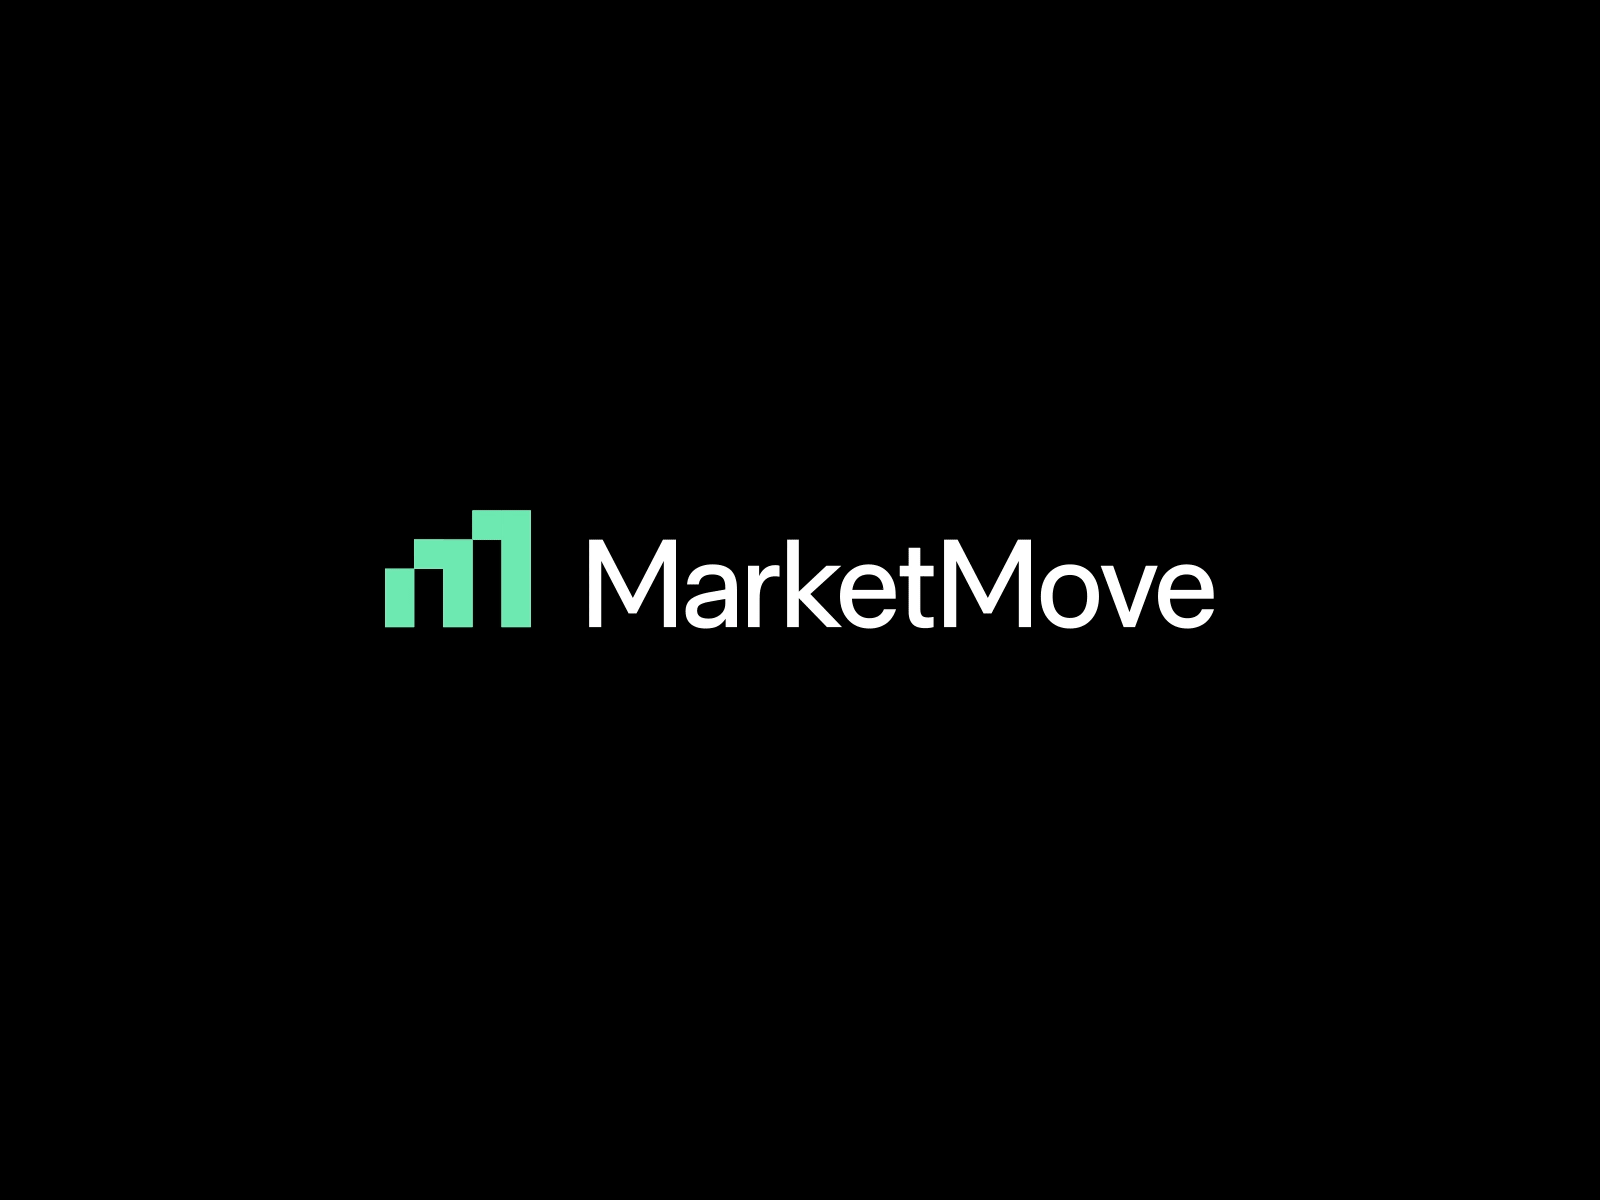 MarketMove animated logo